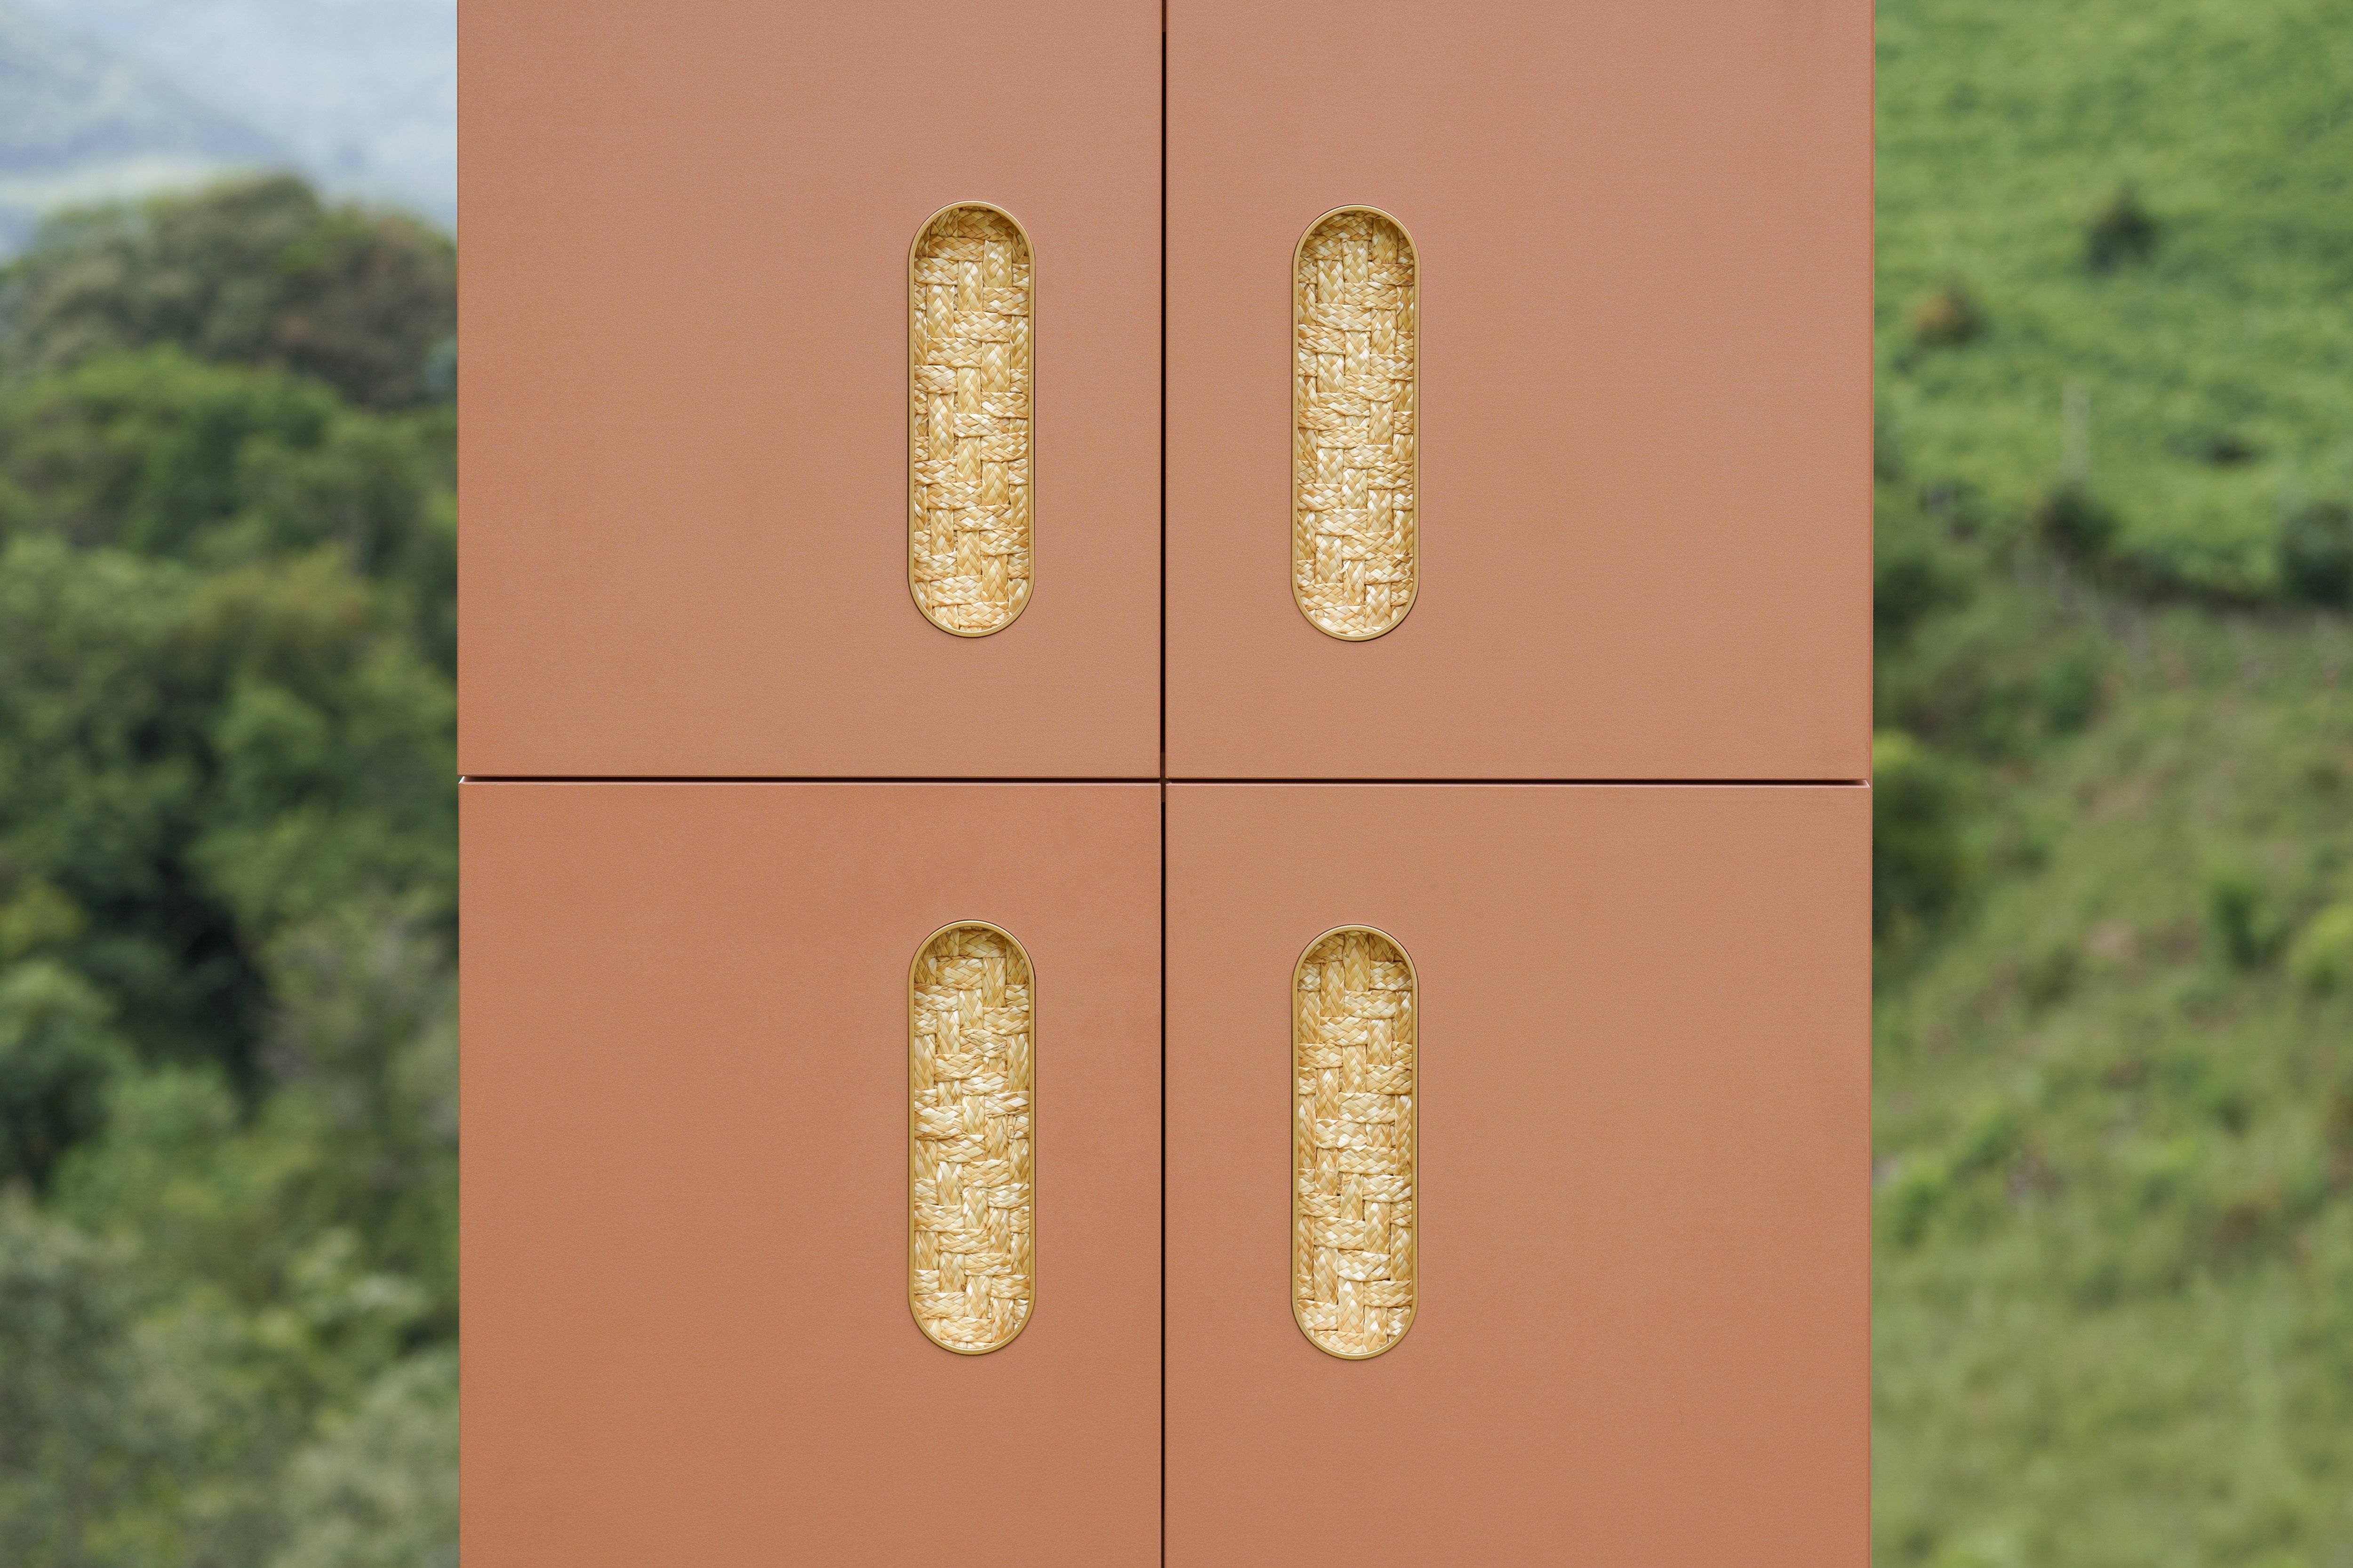 Coleção de móveis “O Espírito do Lugar”, da Evviva,  traz como ponto alto a trama da palha de trigo